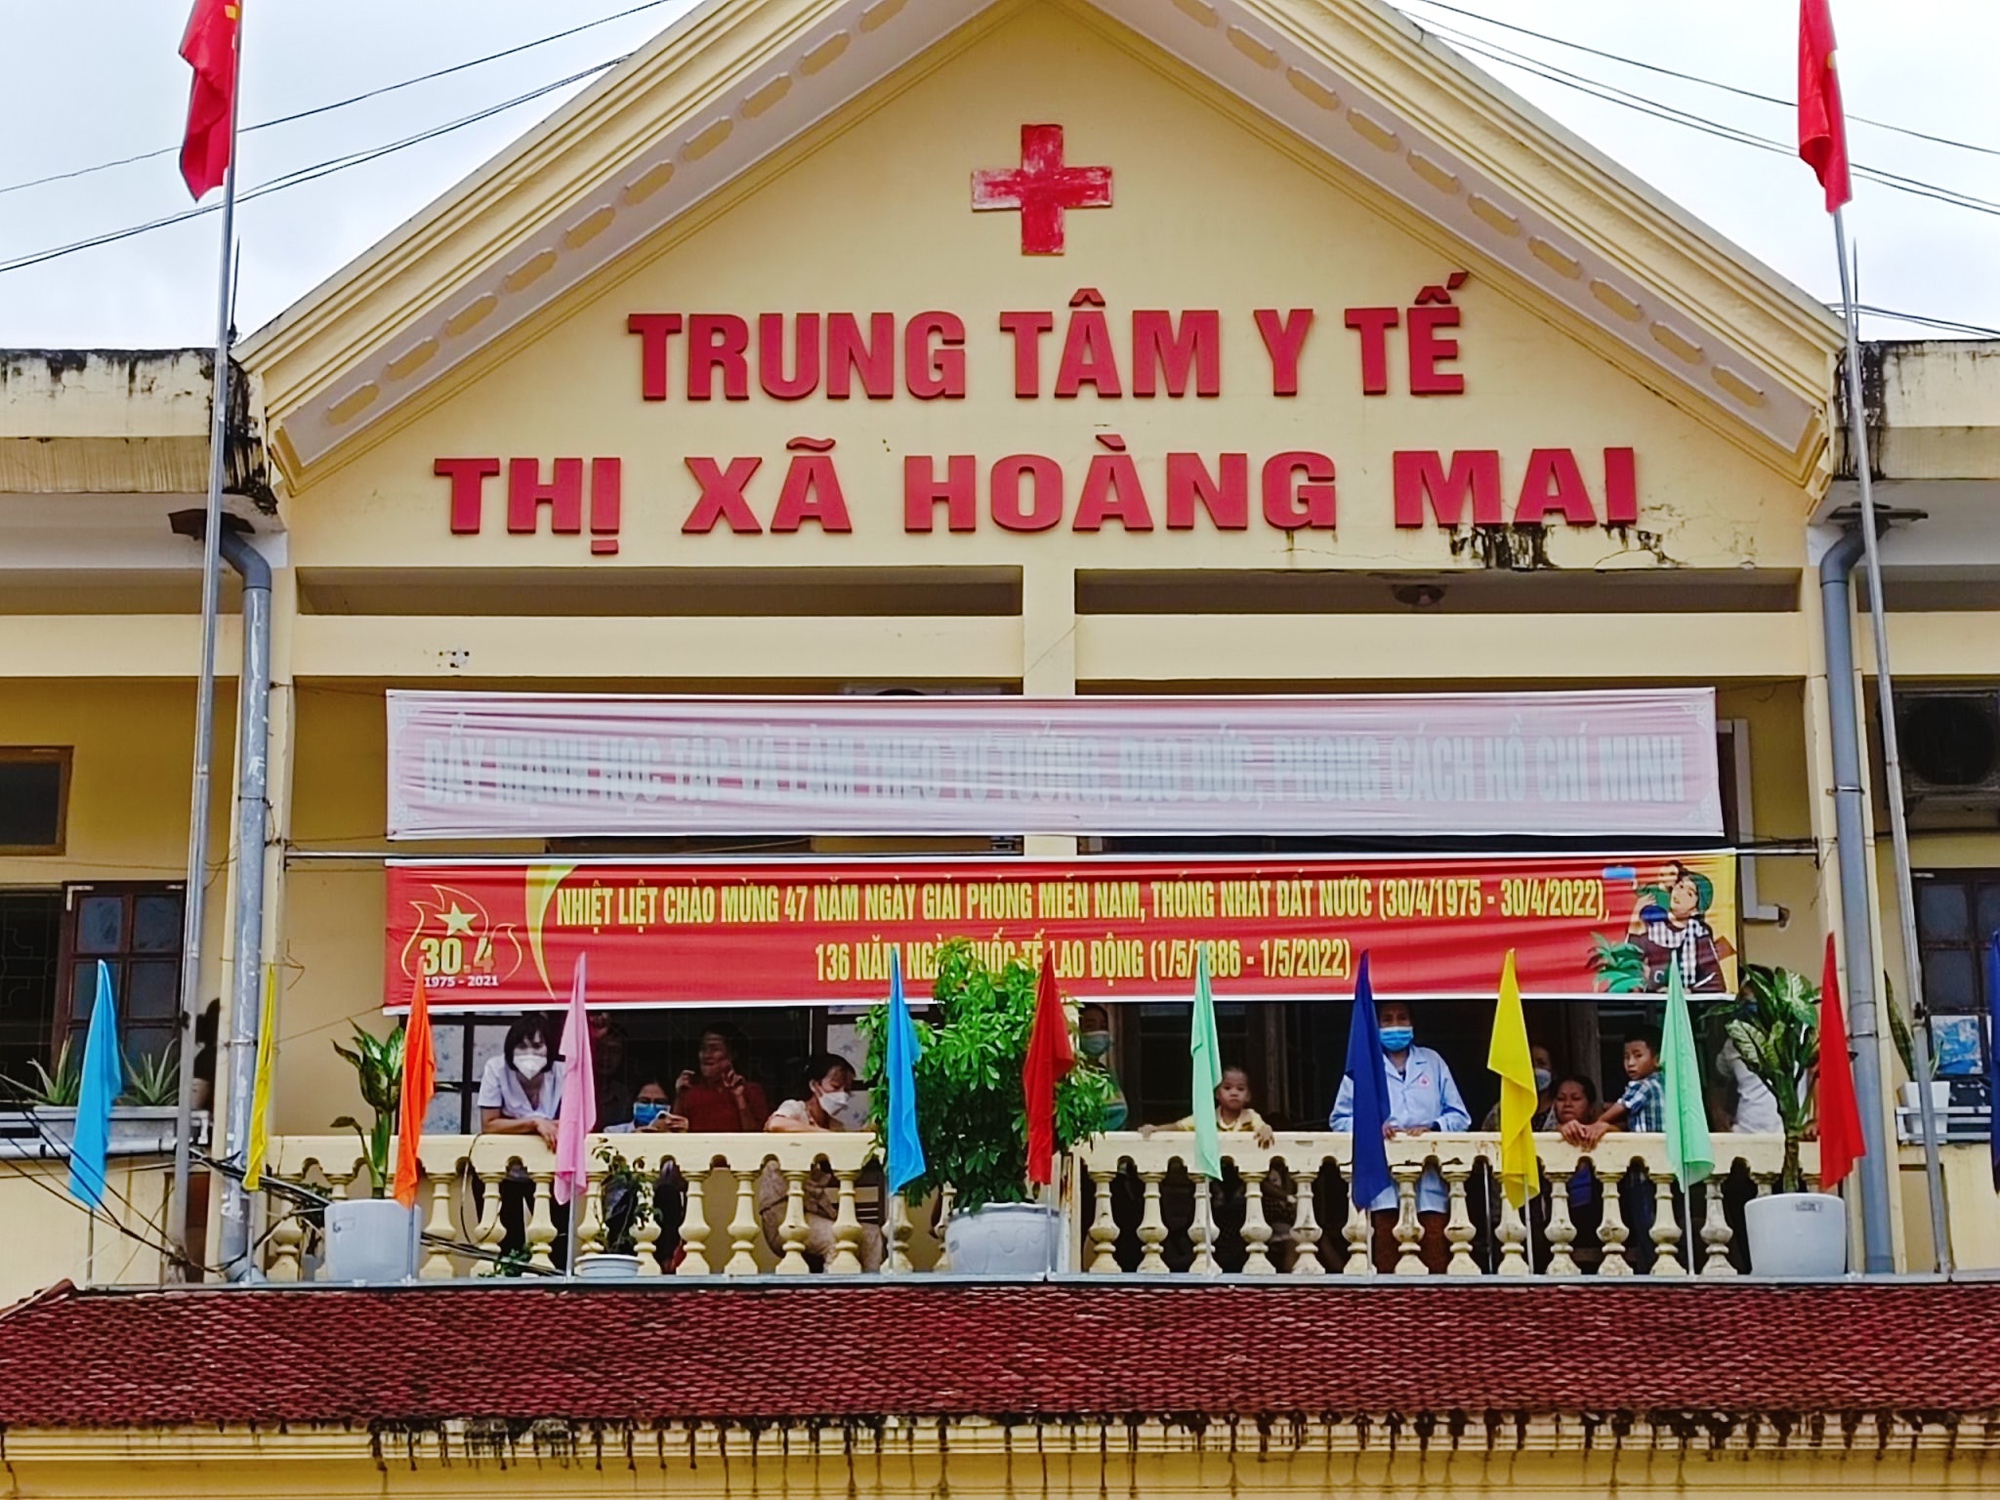 Trung tâm y tế ở Nghệ An bị cô lập trong lũ, bệnh nhân khóc nấc khi nhắc đến nhà cửa - Ảnh 1.